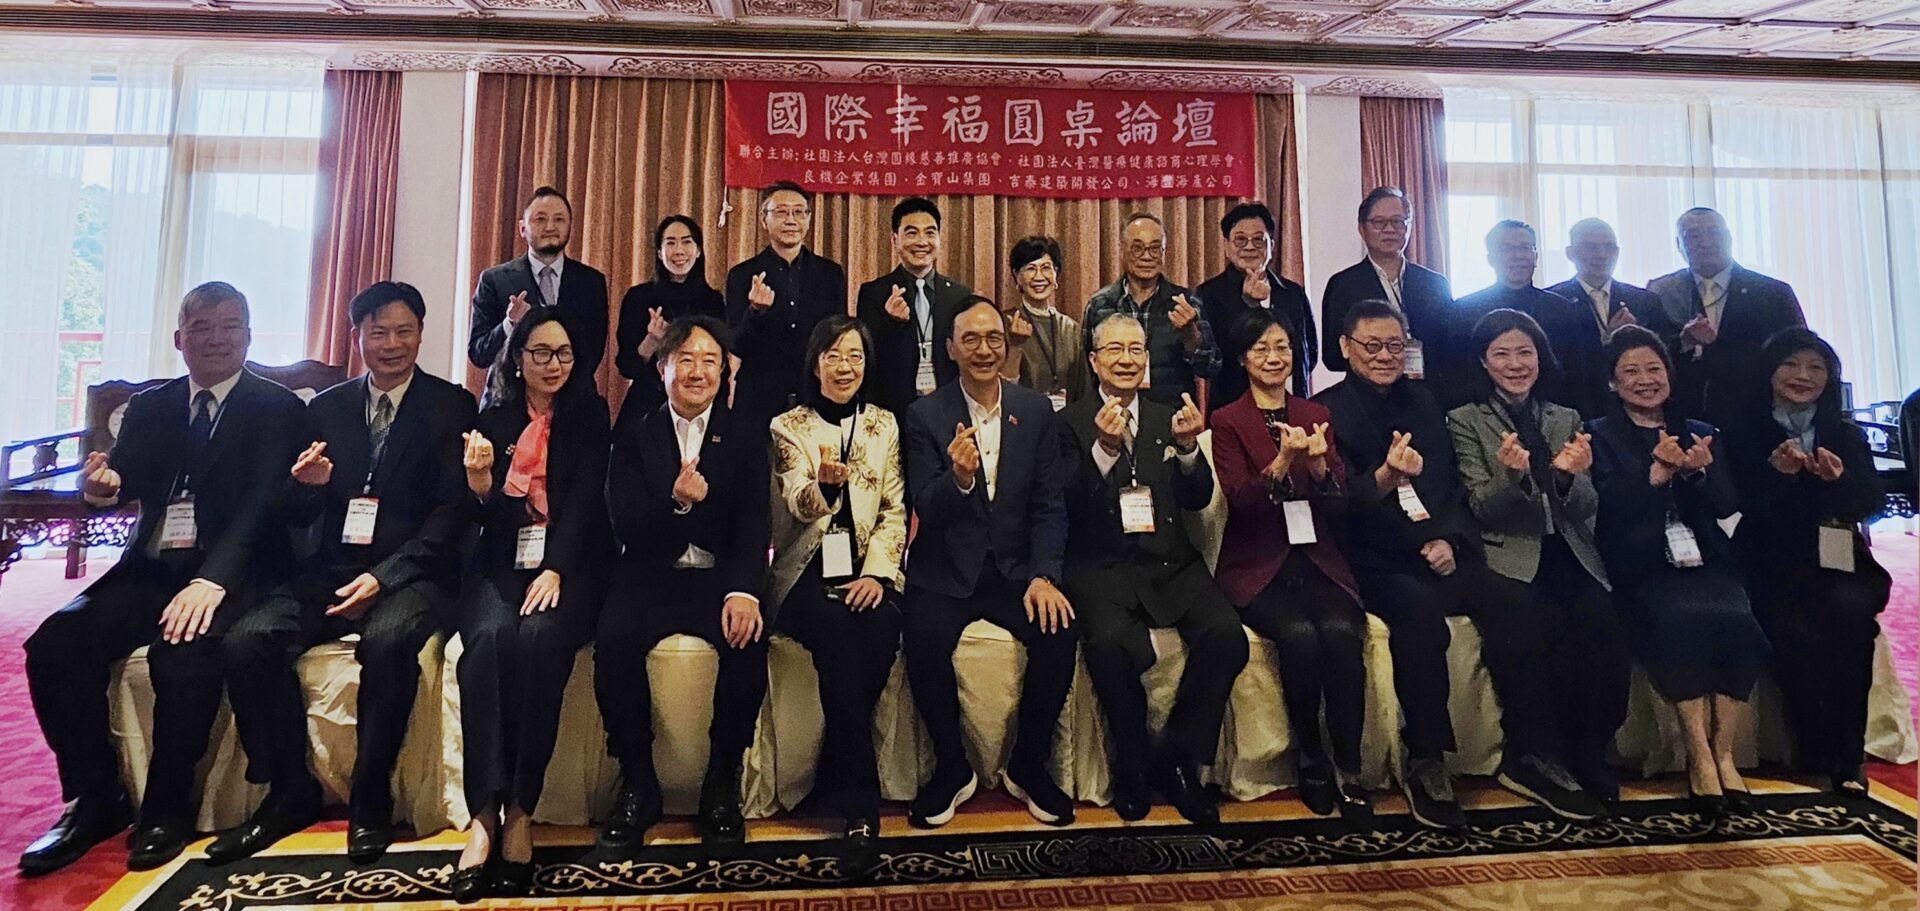 幸福永續保衛戰　台灣舉辦「6心級幸福論壇」